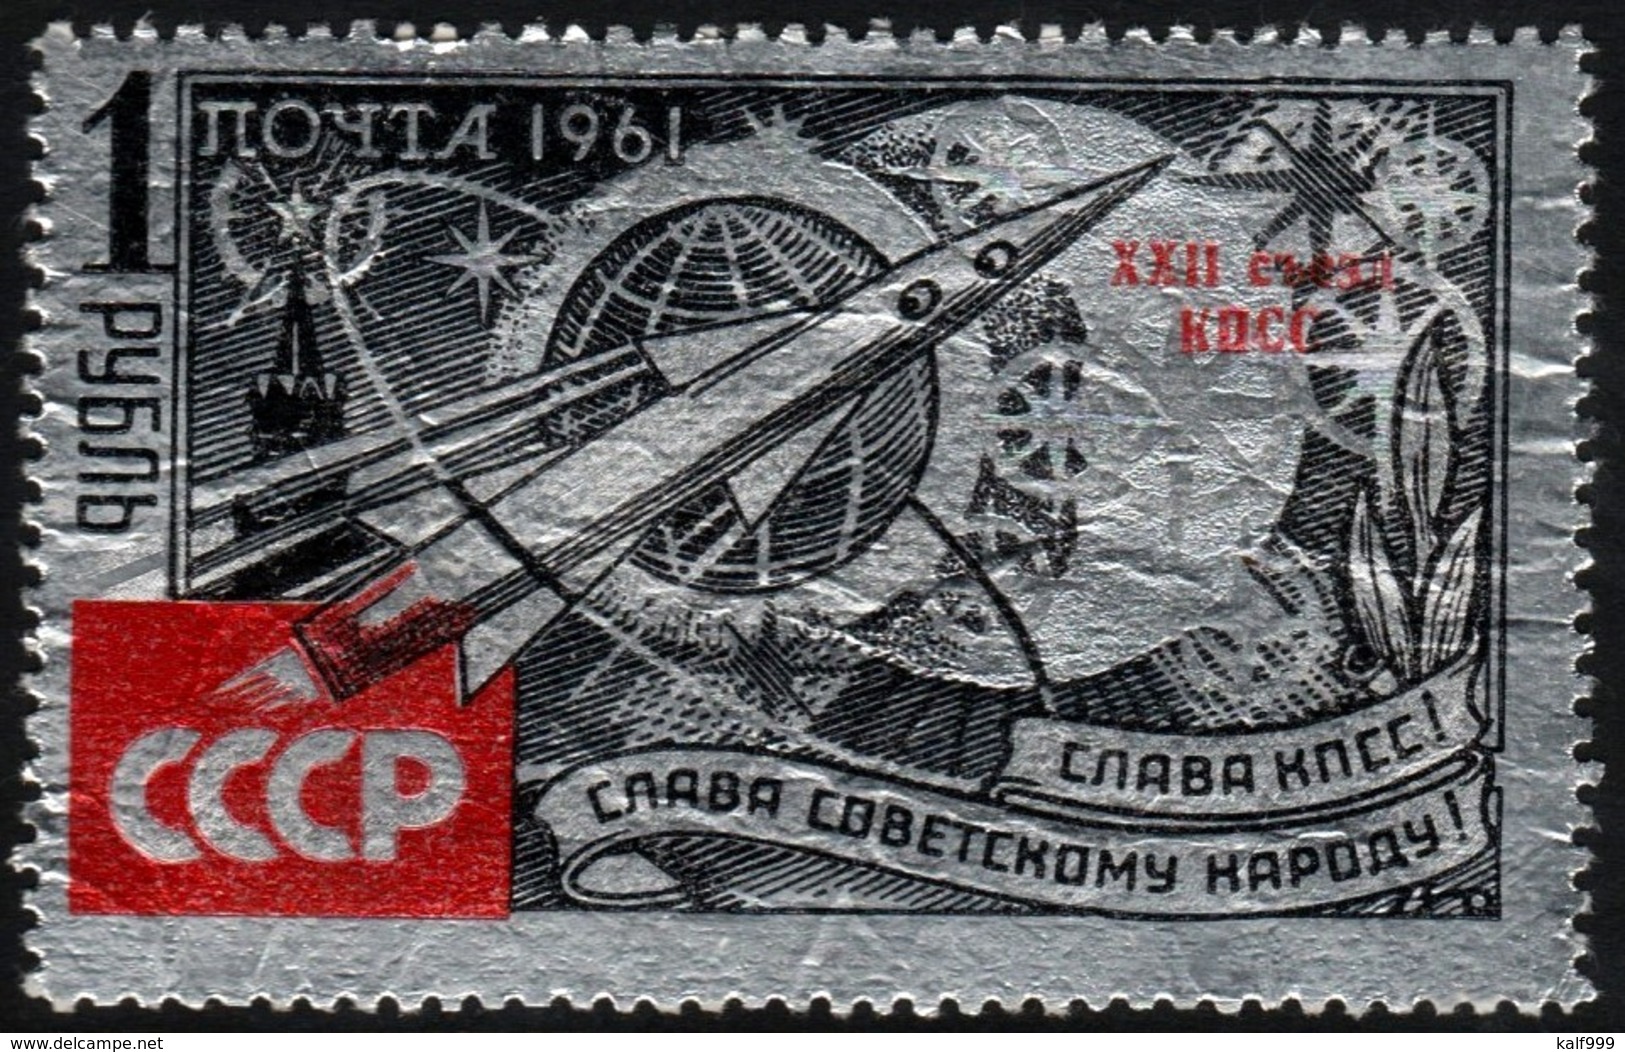 ~~~  Sowjet Union 1961 - Space Silver Foil Overprint - Mi. 2541 MNH ** OG  CV 40.00 Euro ~~~ - Unused Stamps